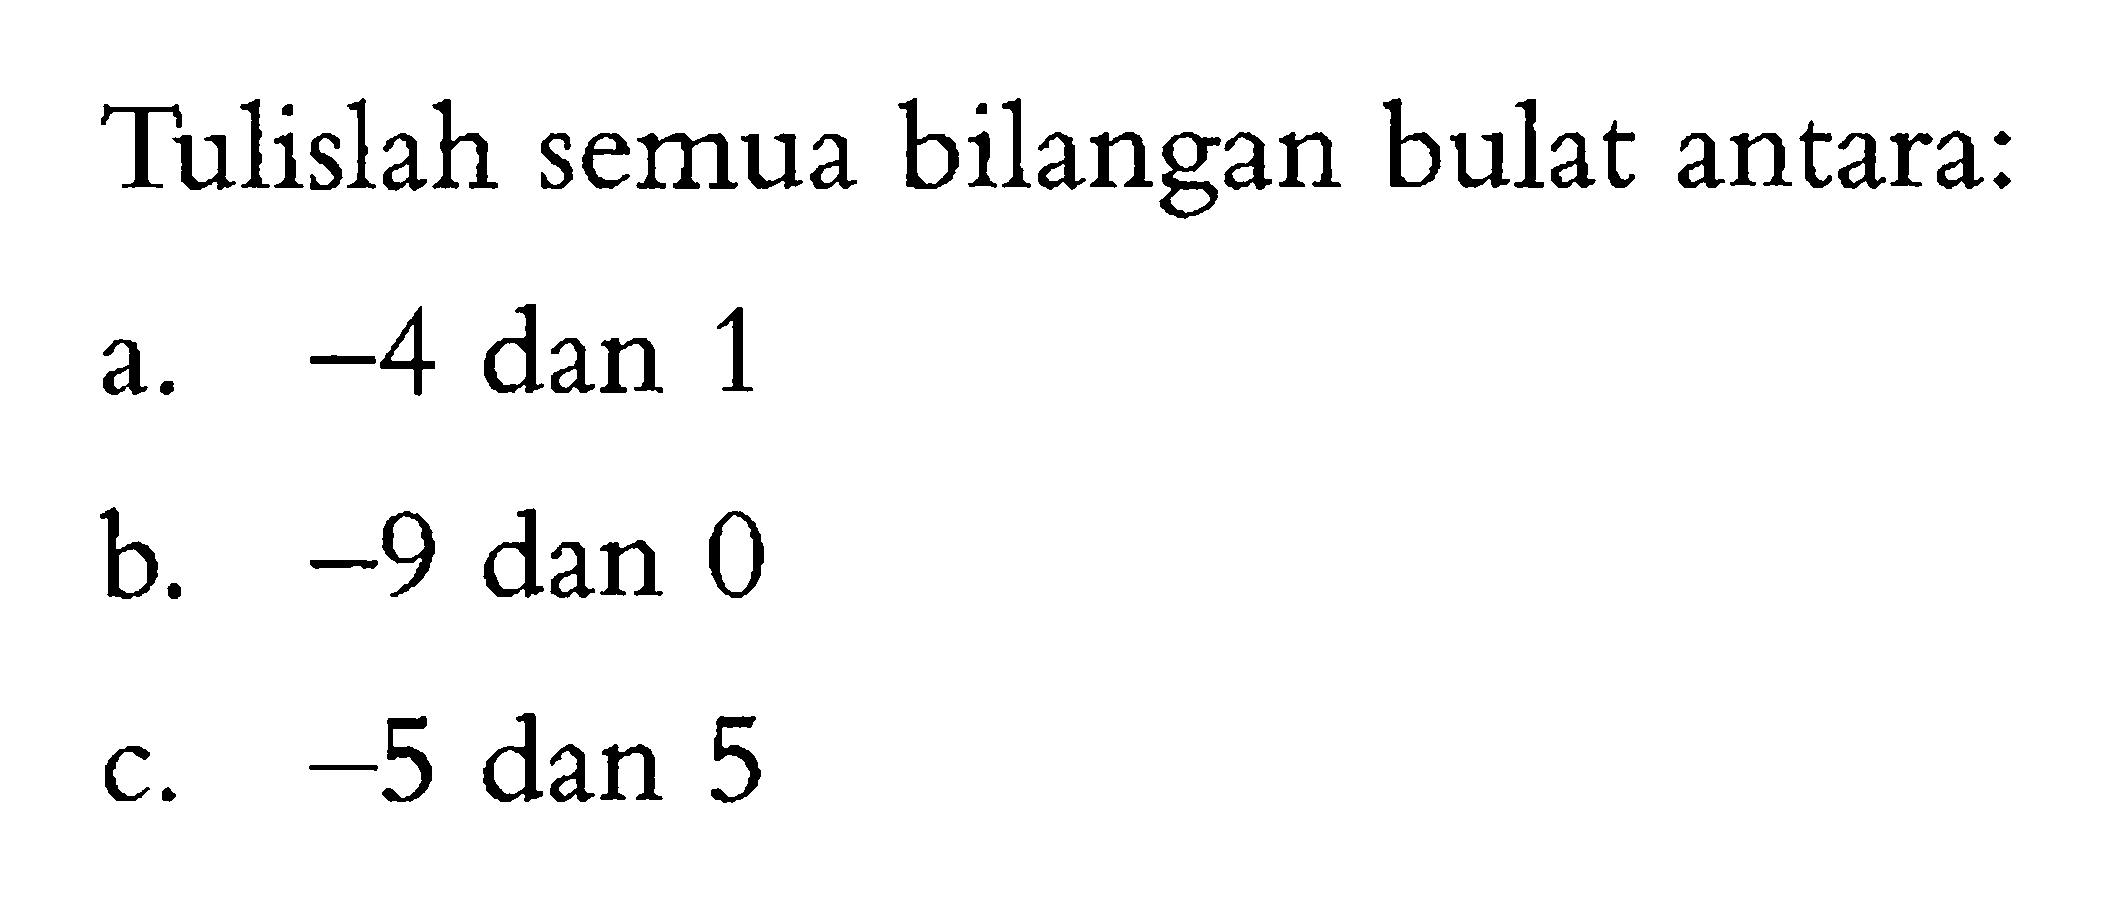 Tulislah semua bilangan bulat antara:  a. -4 dan 1 b. -9 dan 0 c. -5 dan 5